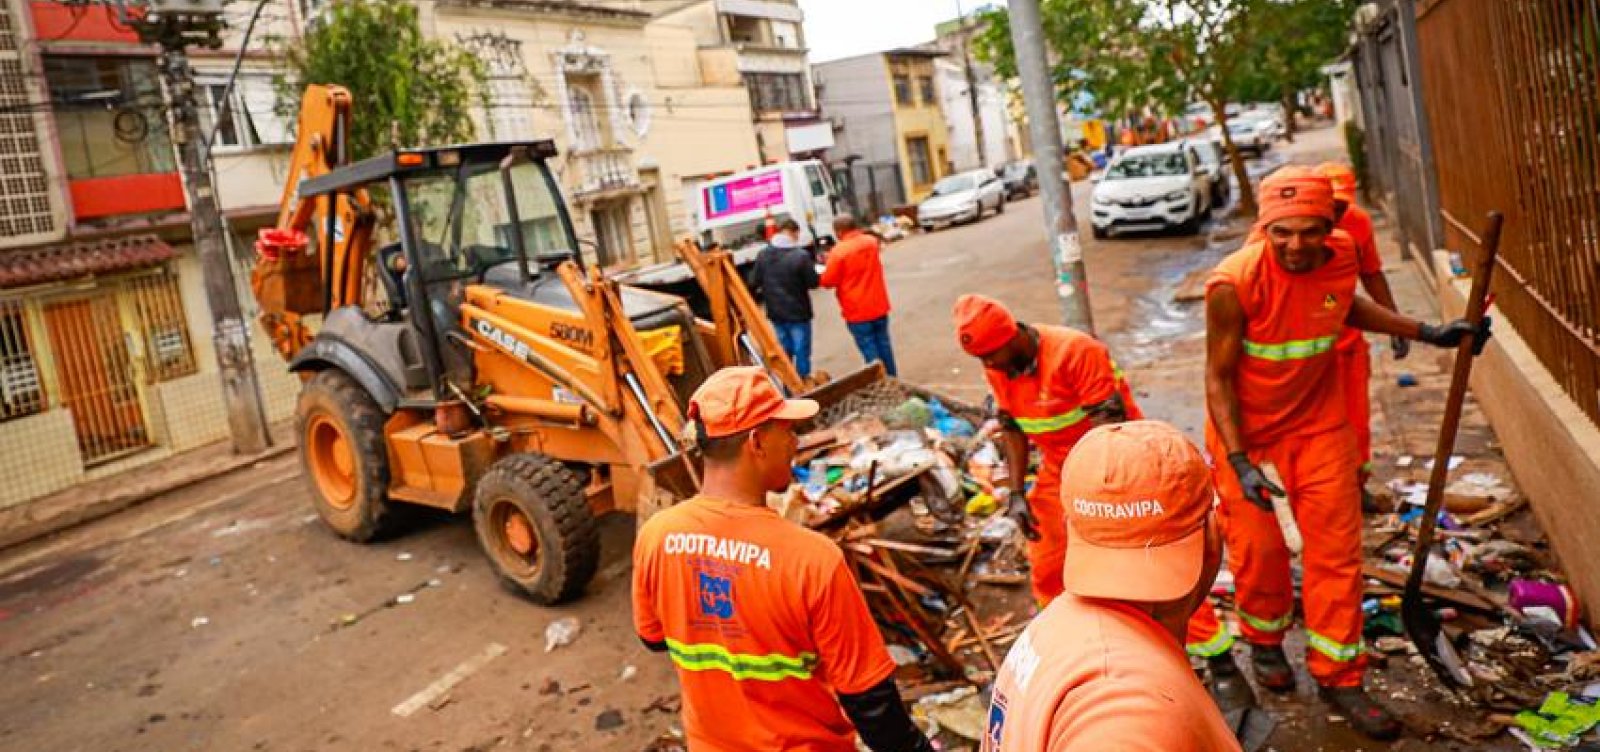 Após nível do lago Guaíba diminuir, centro de Porto Alegre é tomado por entulhos e lixo 